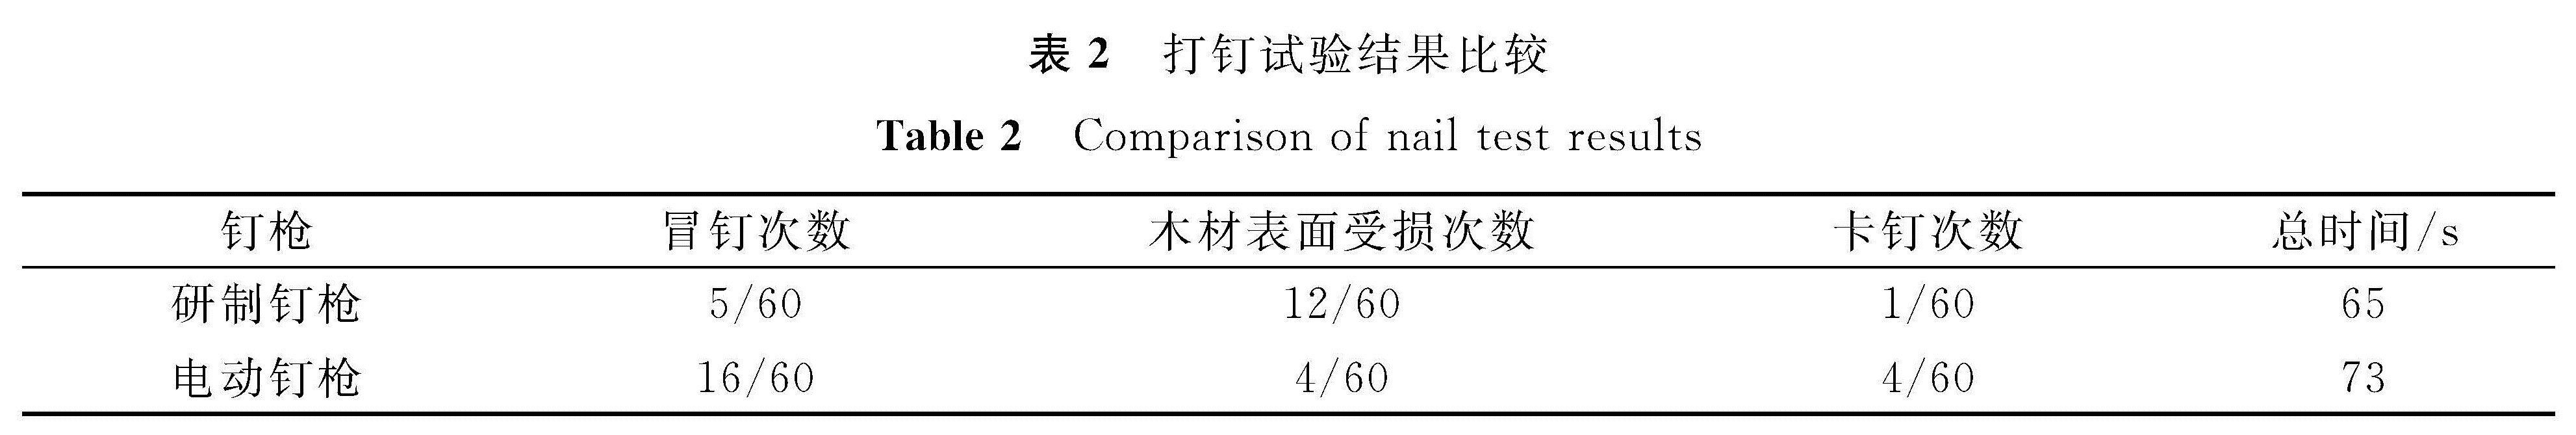 表2 打钉试验结果比较<br/>Table 2 Comparison of nail test results